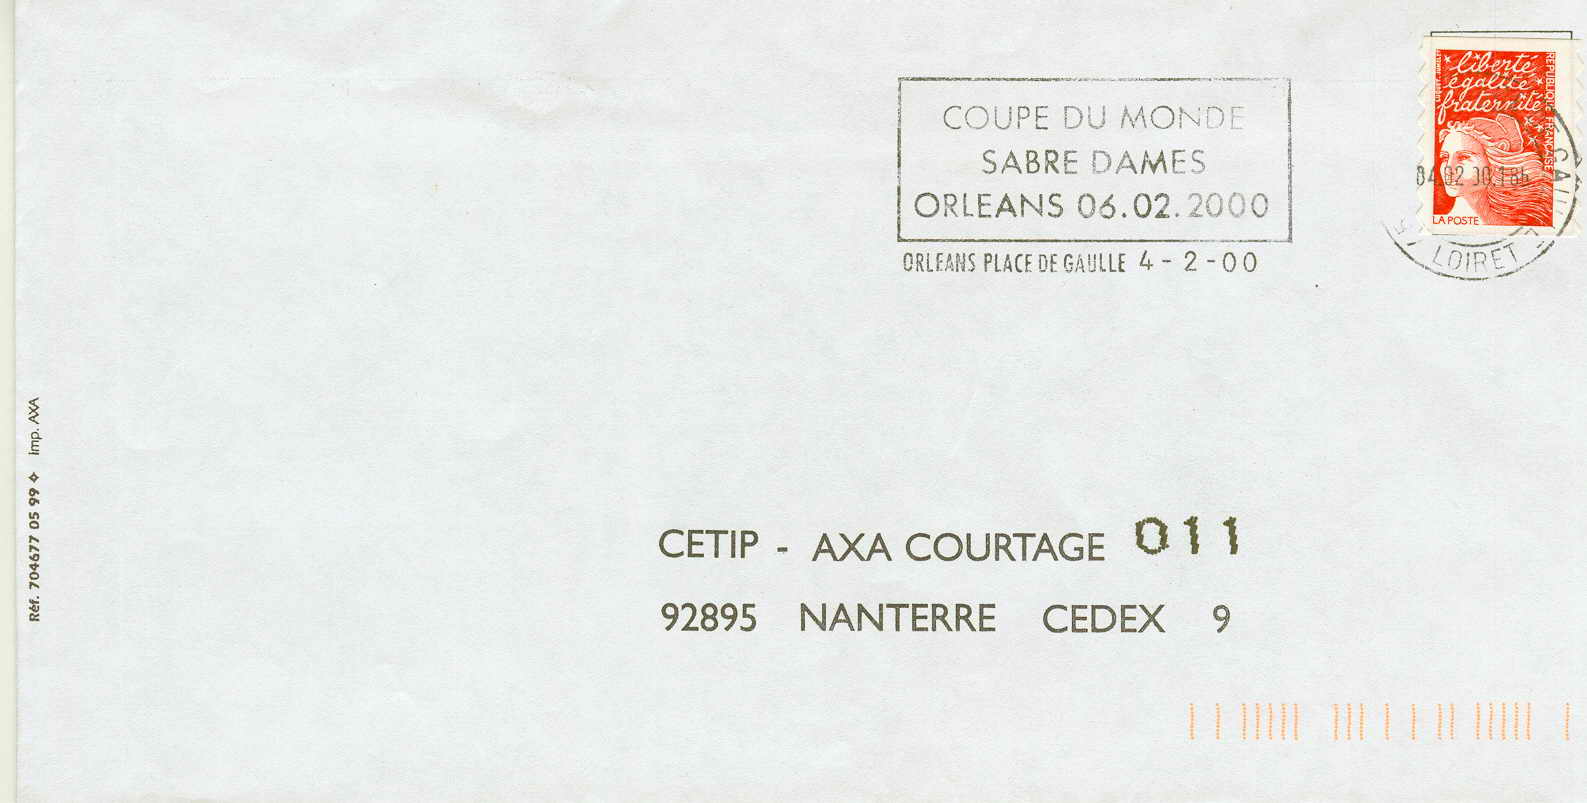 ESCRIME OBLITERATION TEMPORAIRE FRANCAISE 2000 ORLEANS COUPE DU MONDE DE SABRE - Fencing